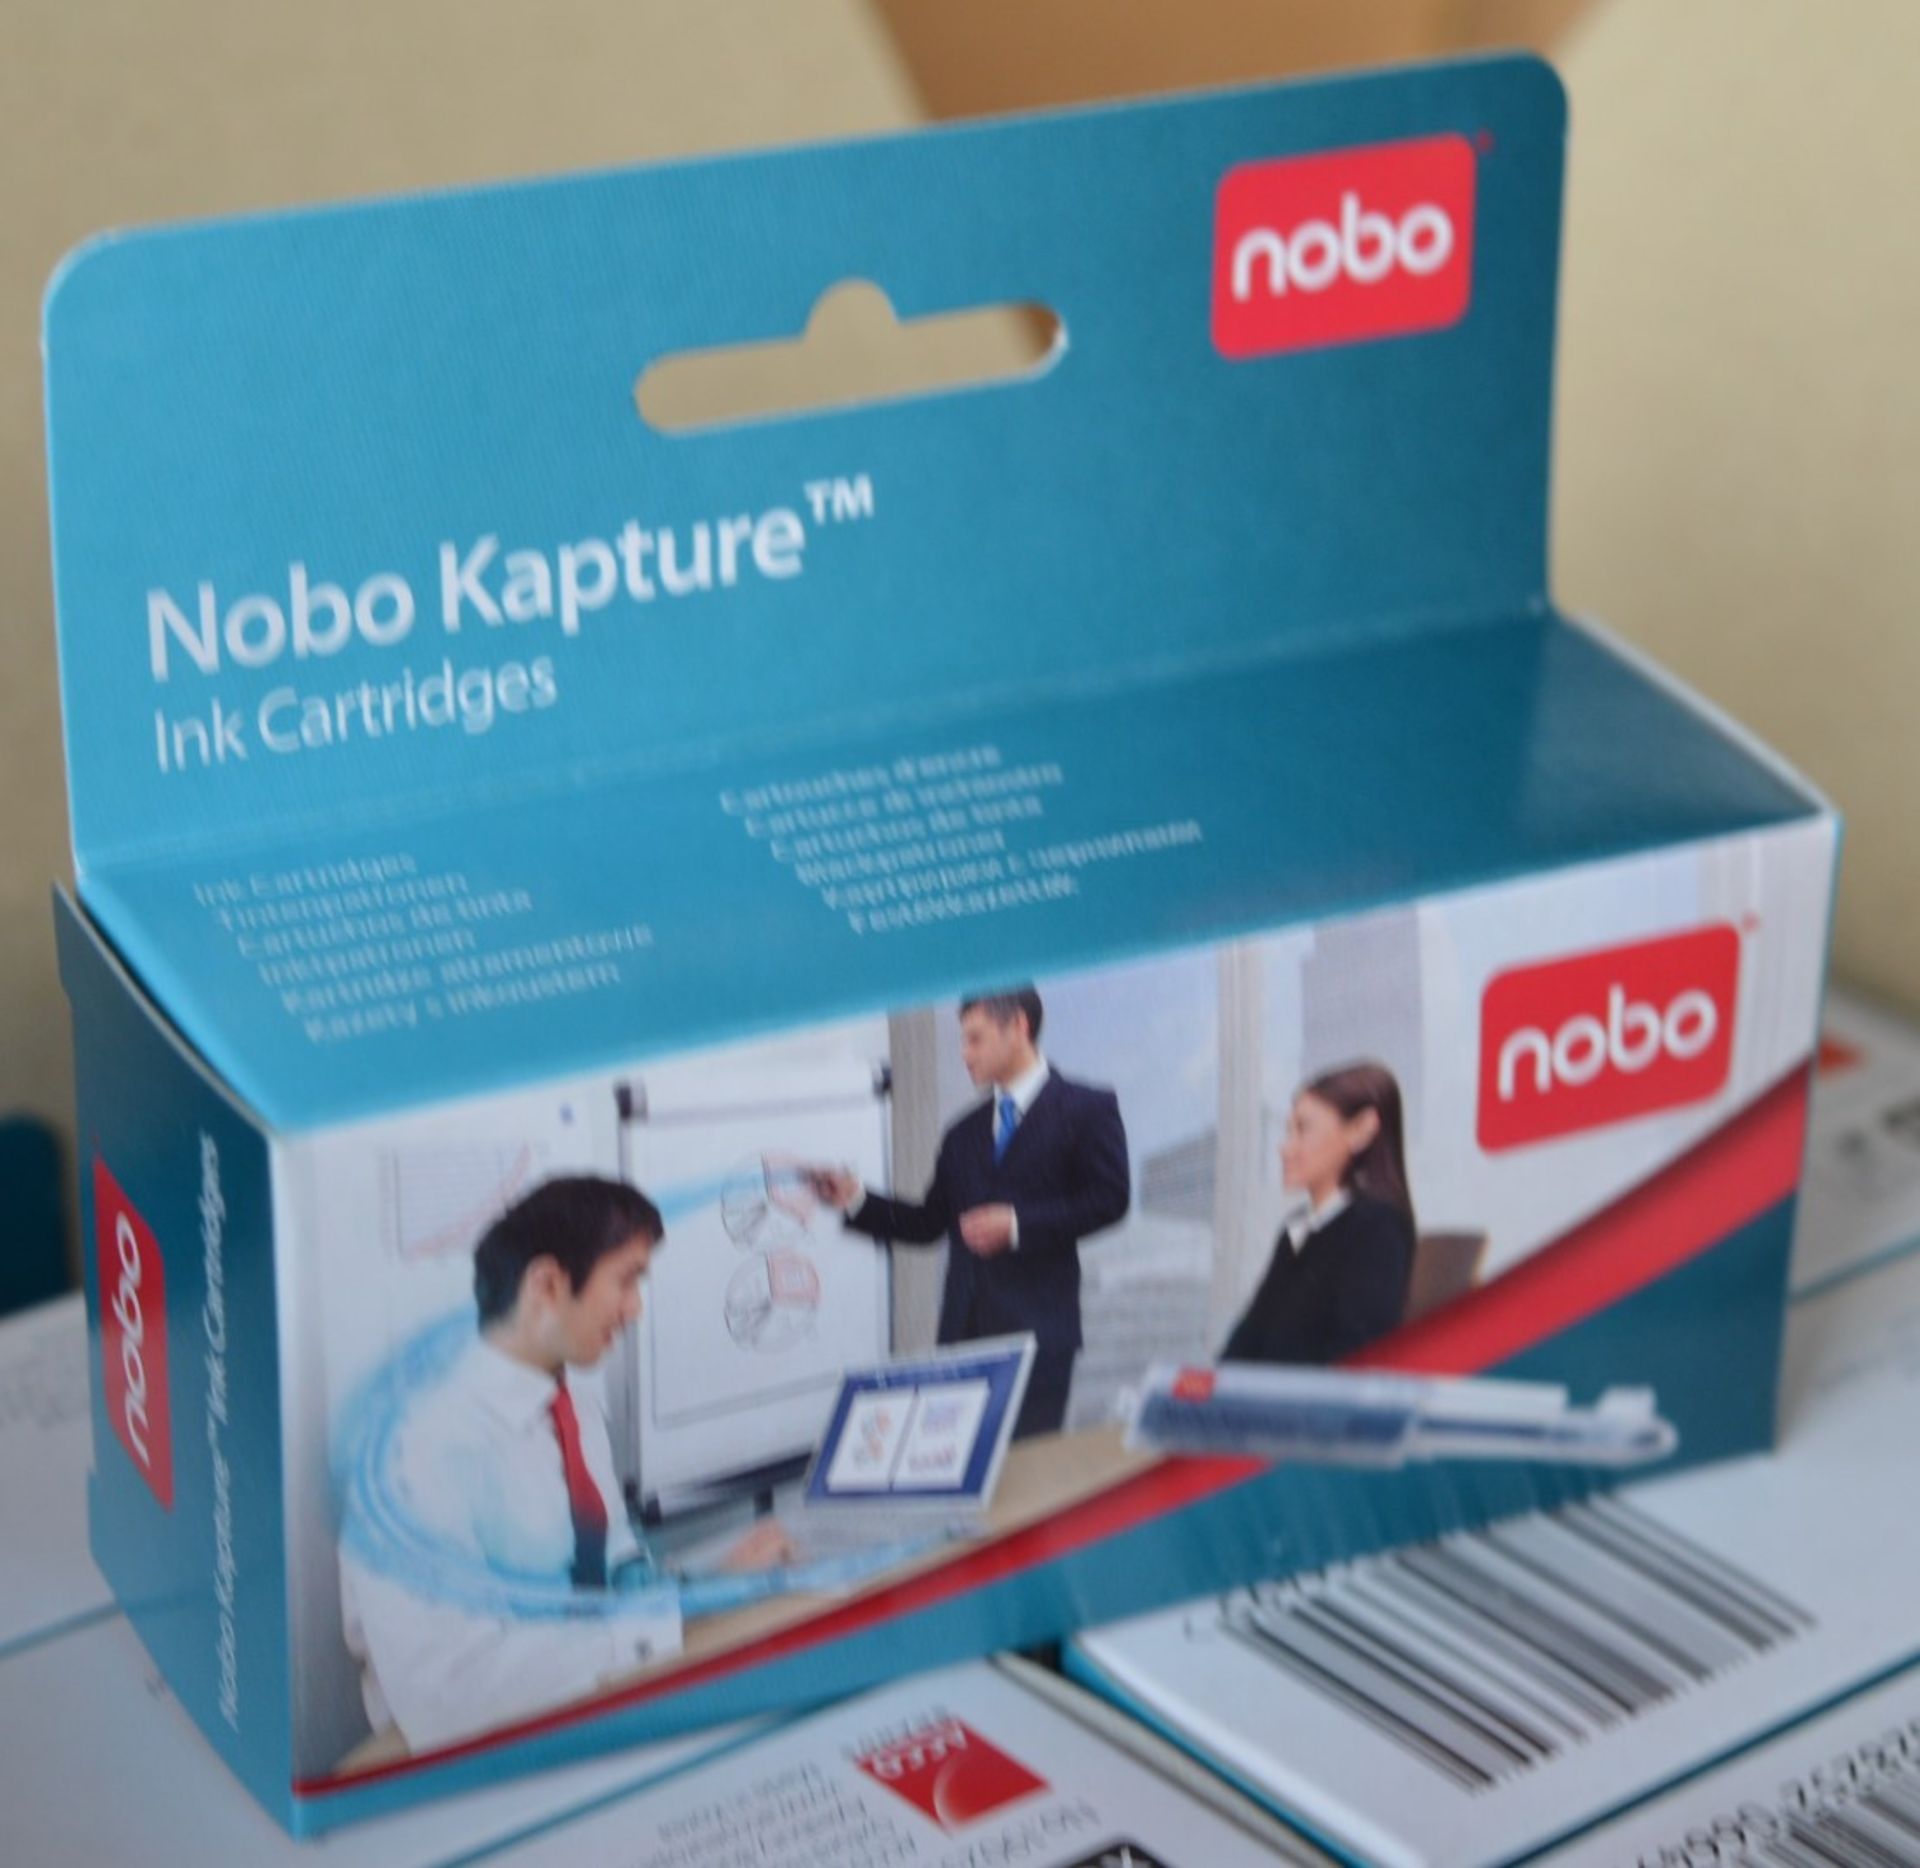 120 x Packs of Nobo Kapture Ink Cartridges - Includes 120 x Packs of 6 x Ink Cartridges - For Use